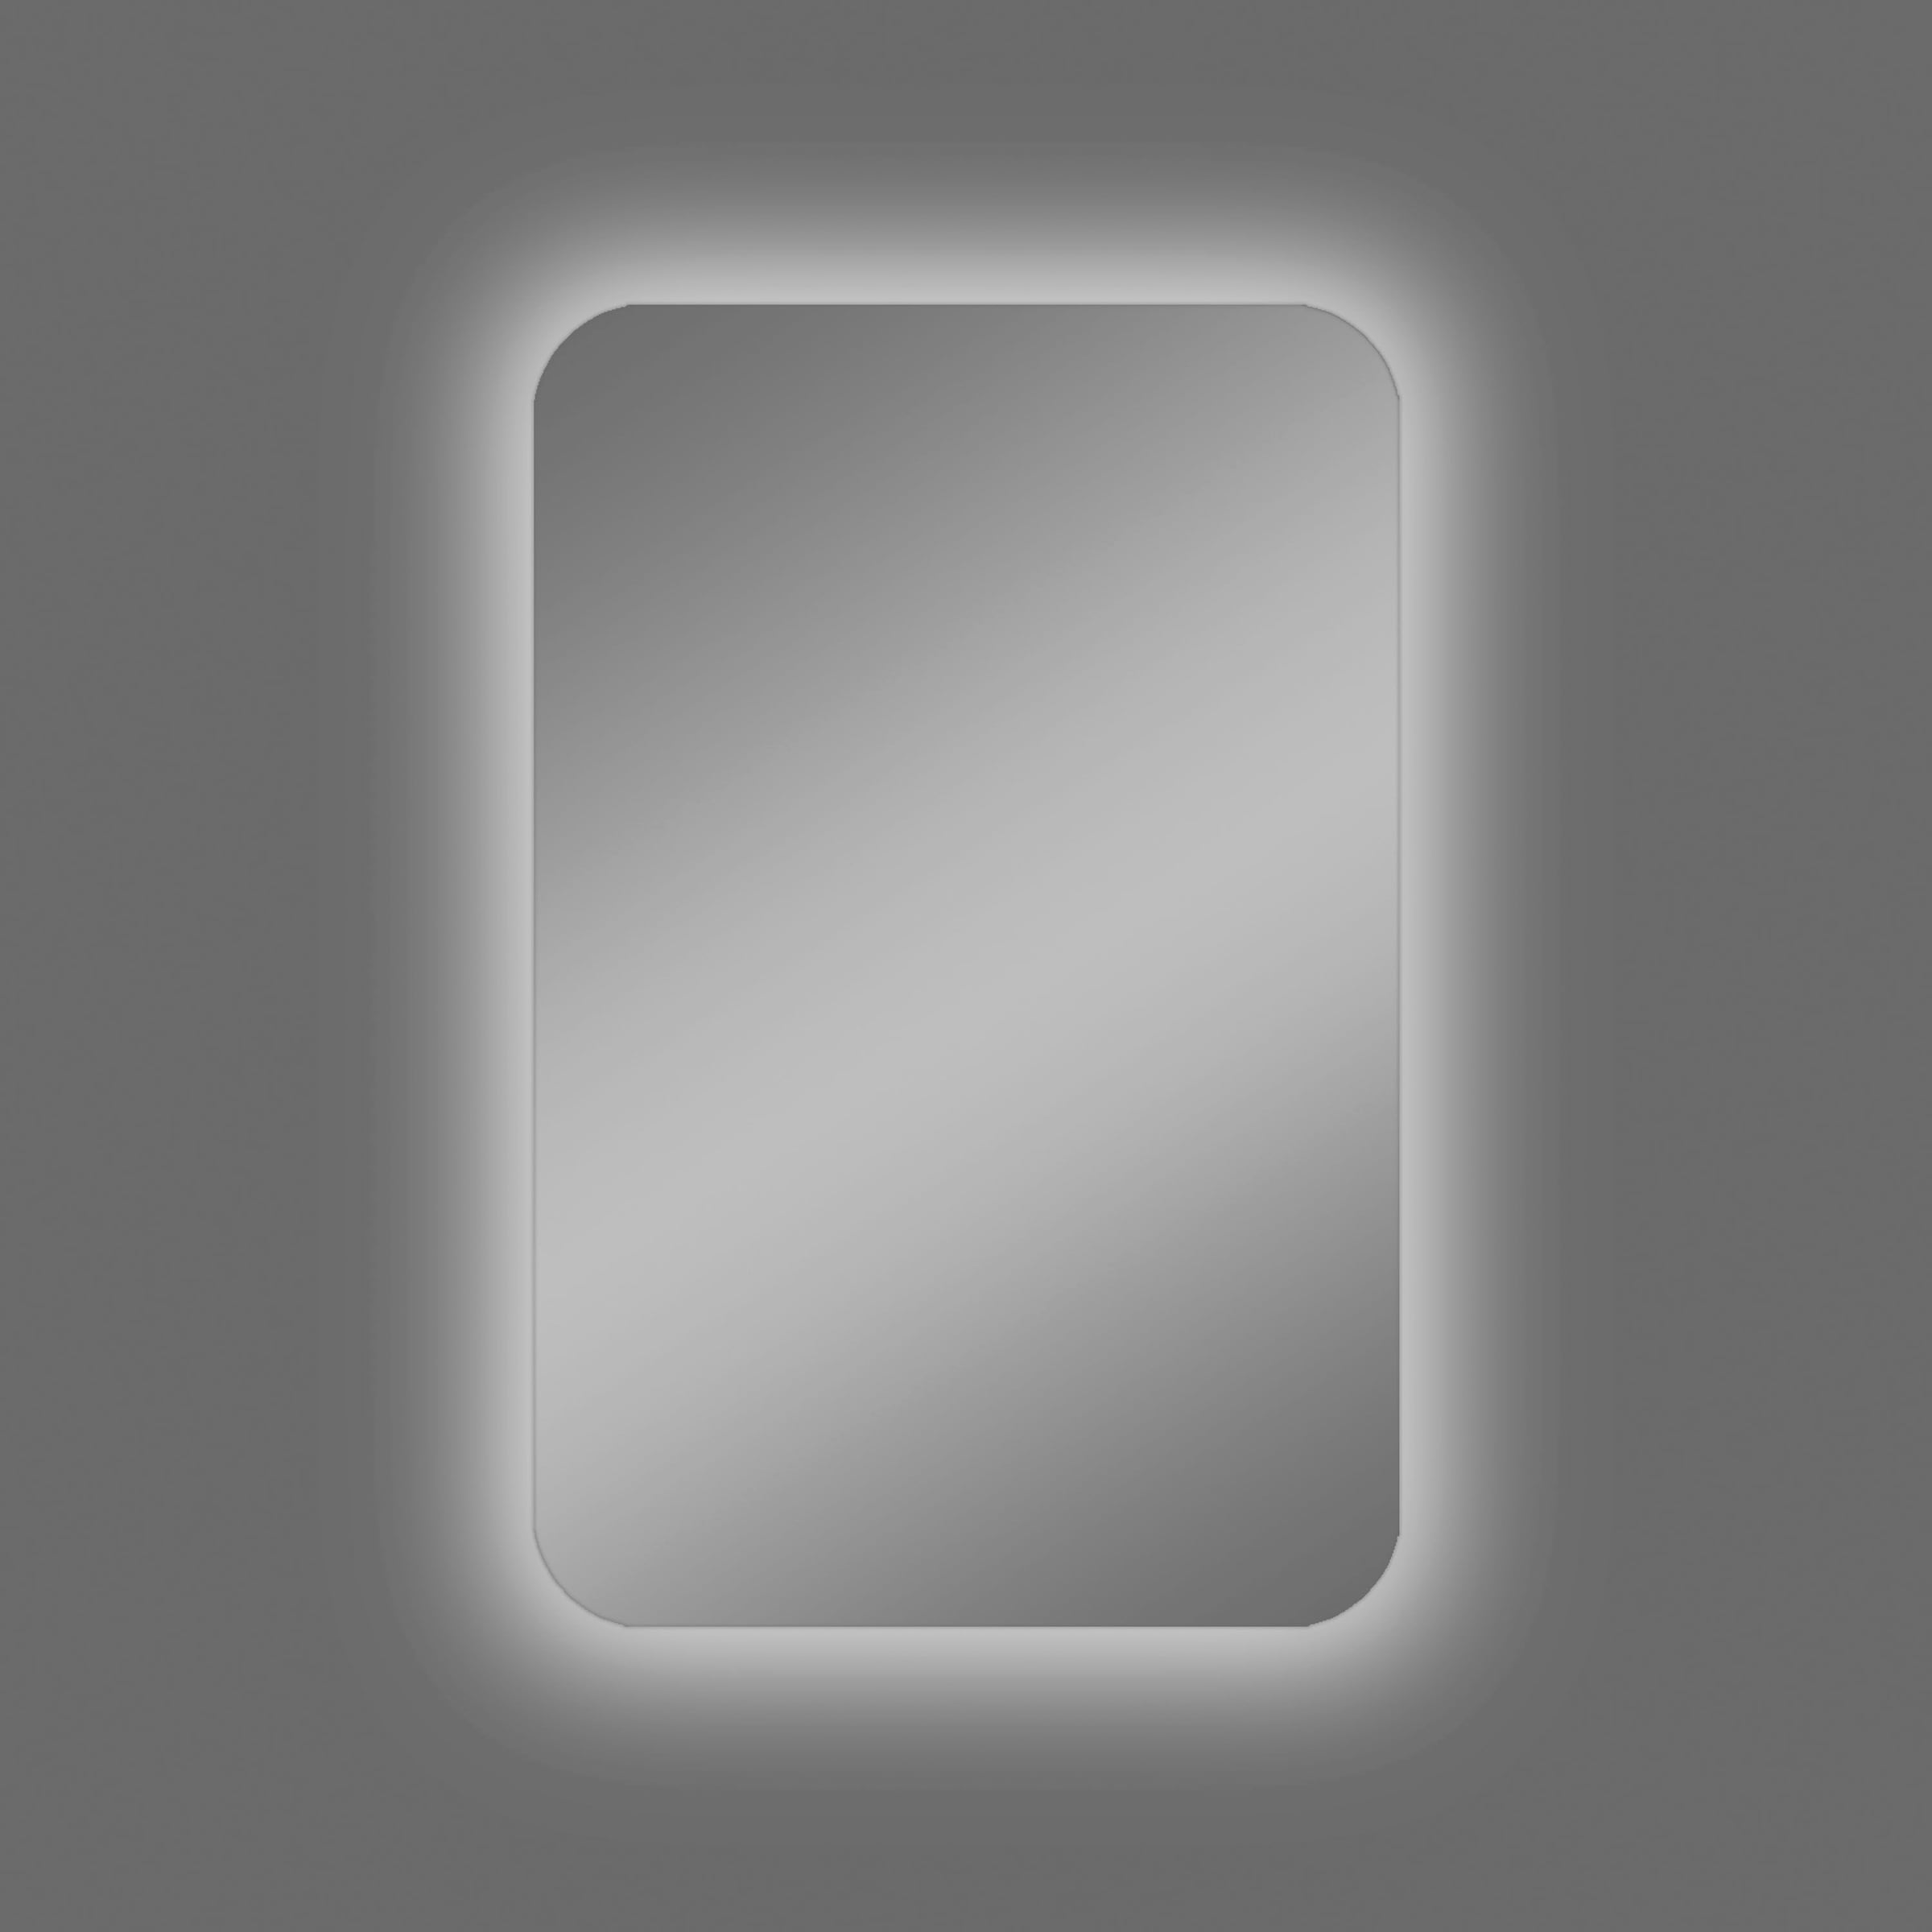 Talos Badezimmerspiegelschrank, oval, BxH: 40x60 cm, aus Alumunium und Echtglas, IP24